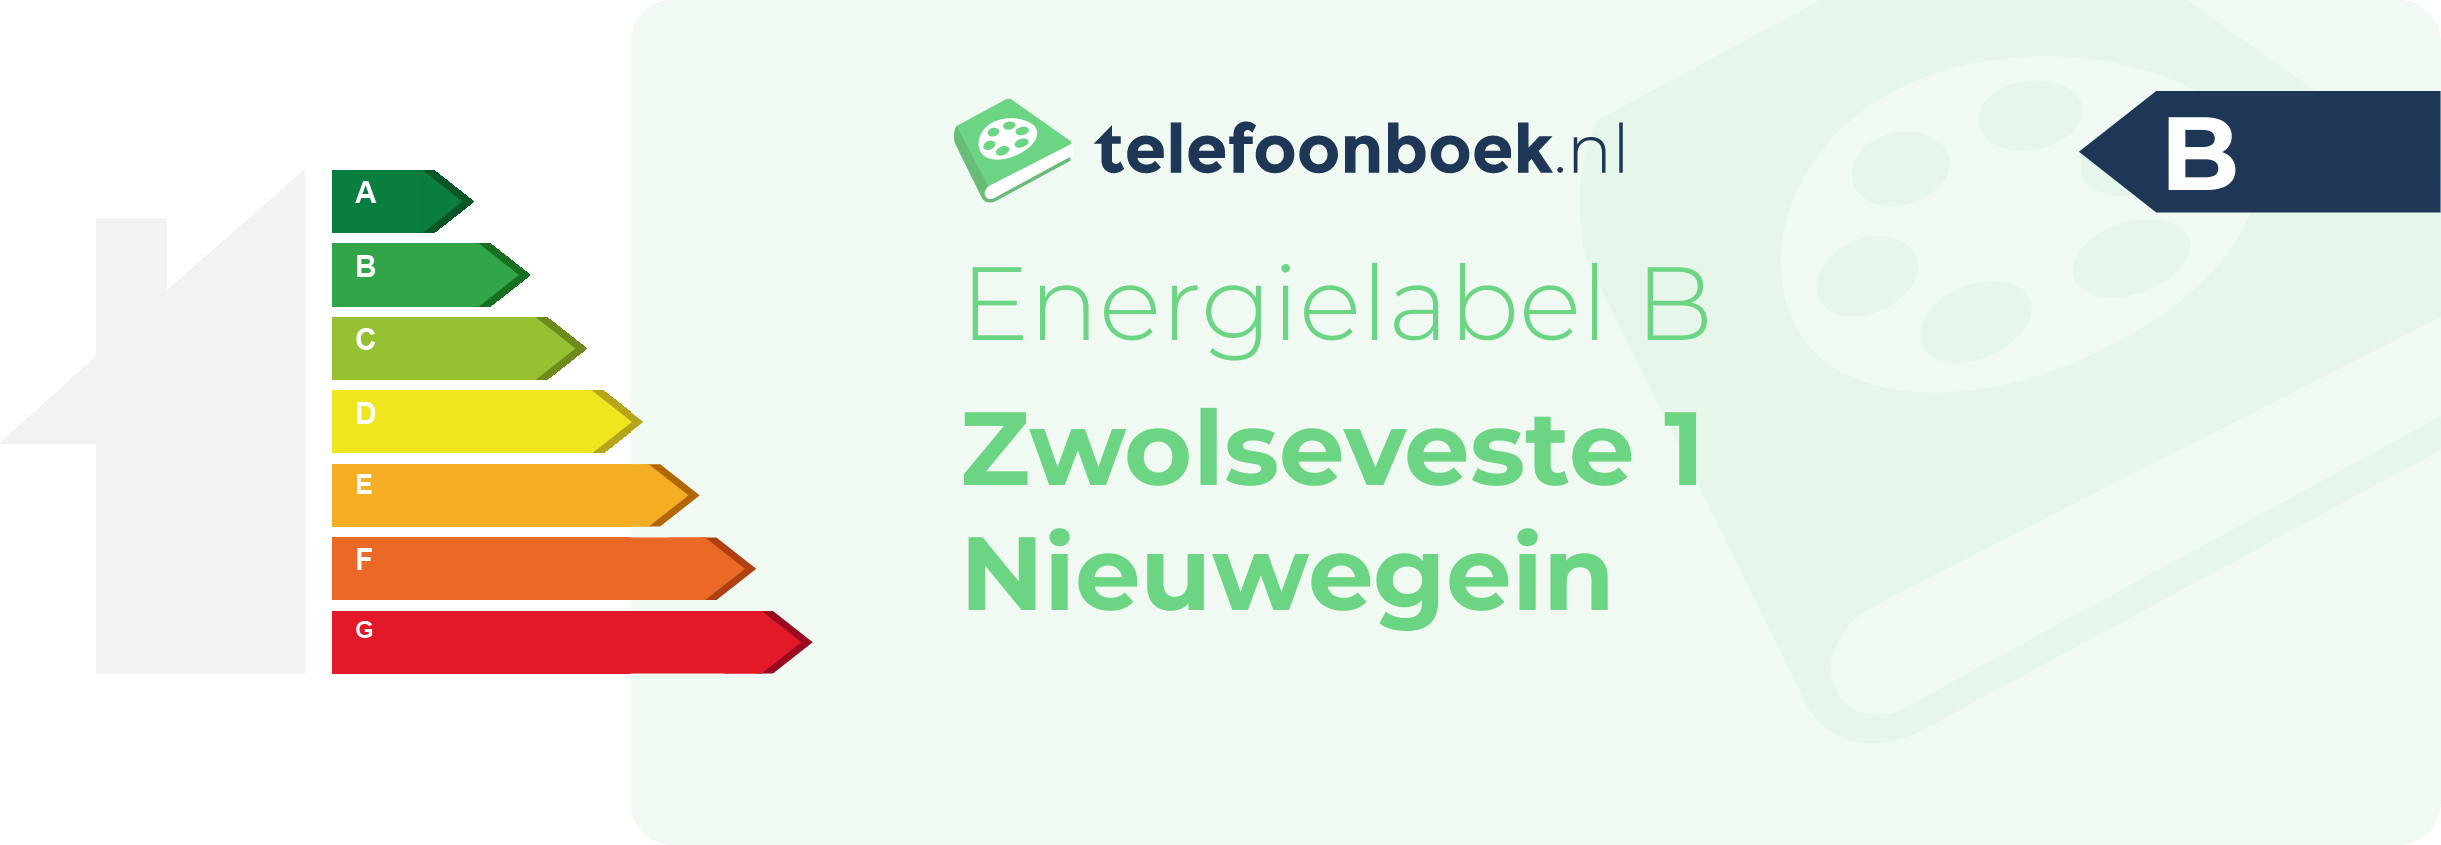 Energielabel Zwolseveste 1 Nieuwegein